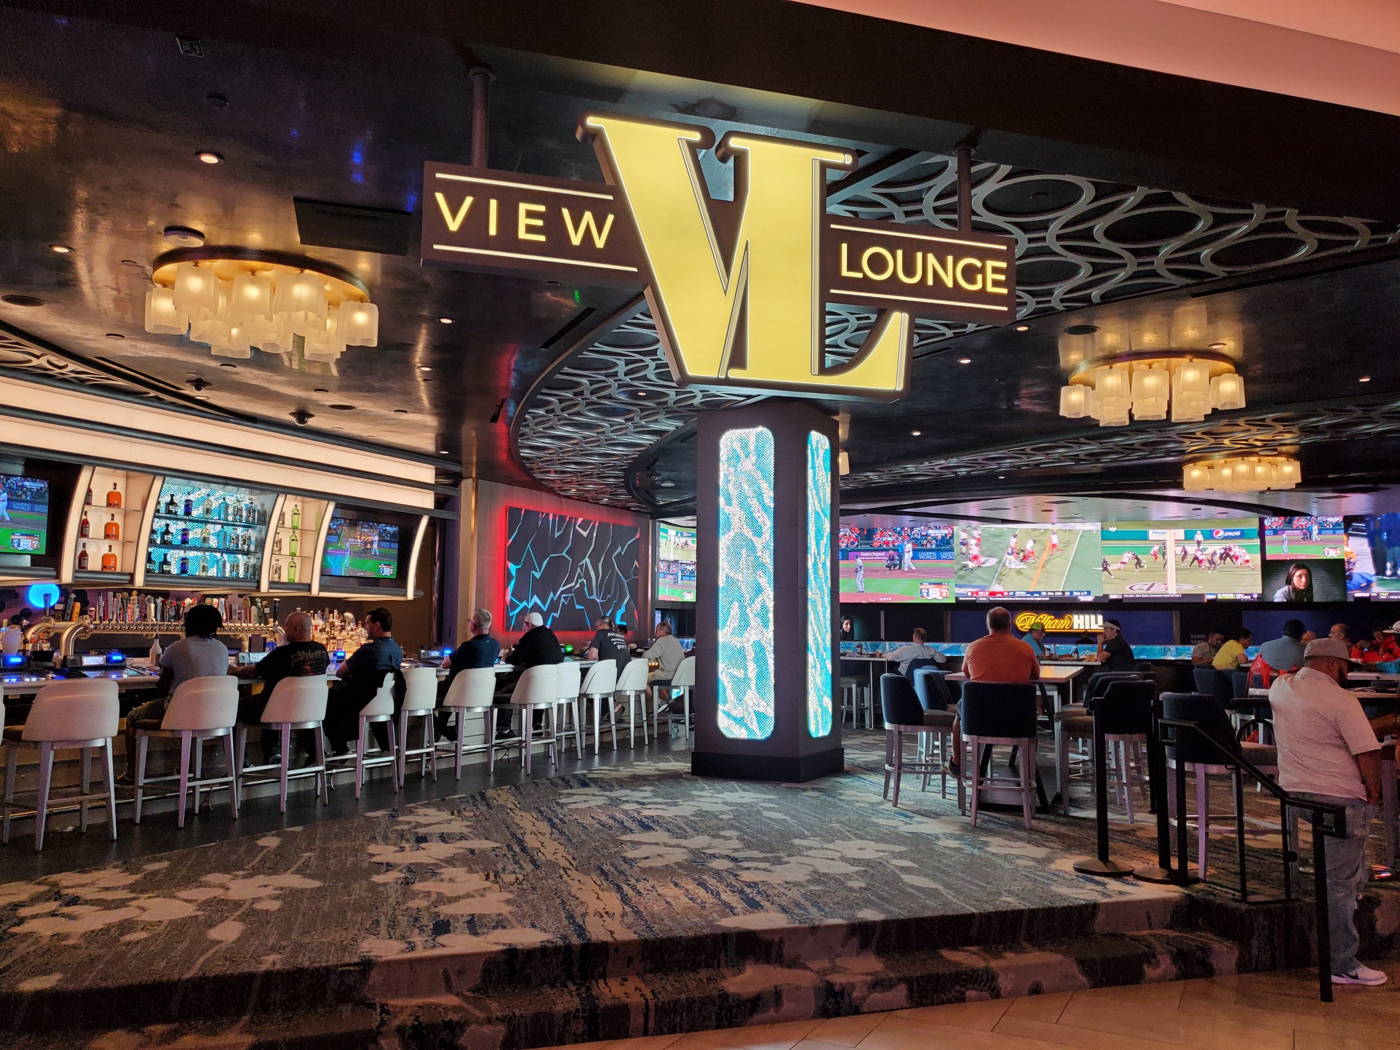 View Lounge at The Strat Las Vegas